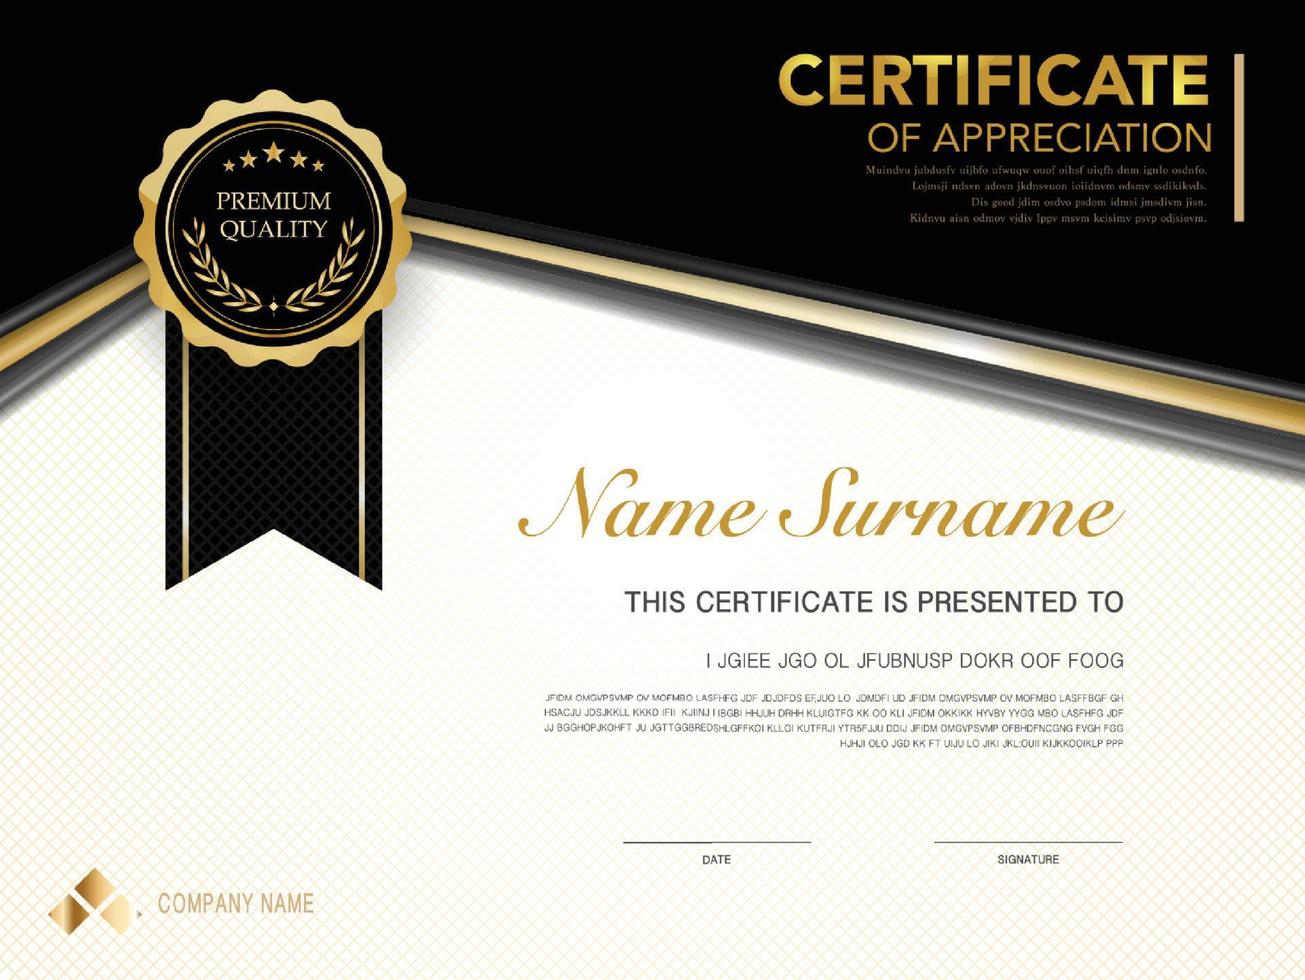 modello di certificato di diploma colore nero e oro con immagine vettoriale di lusso e stile moderno